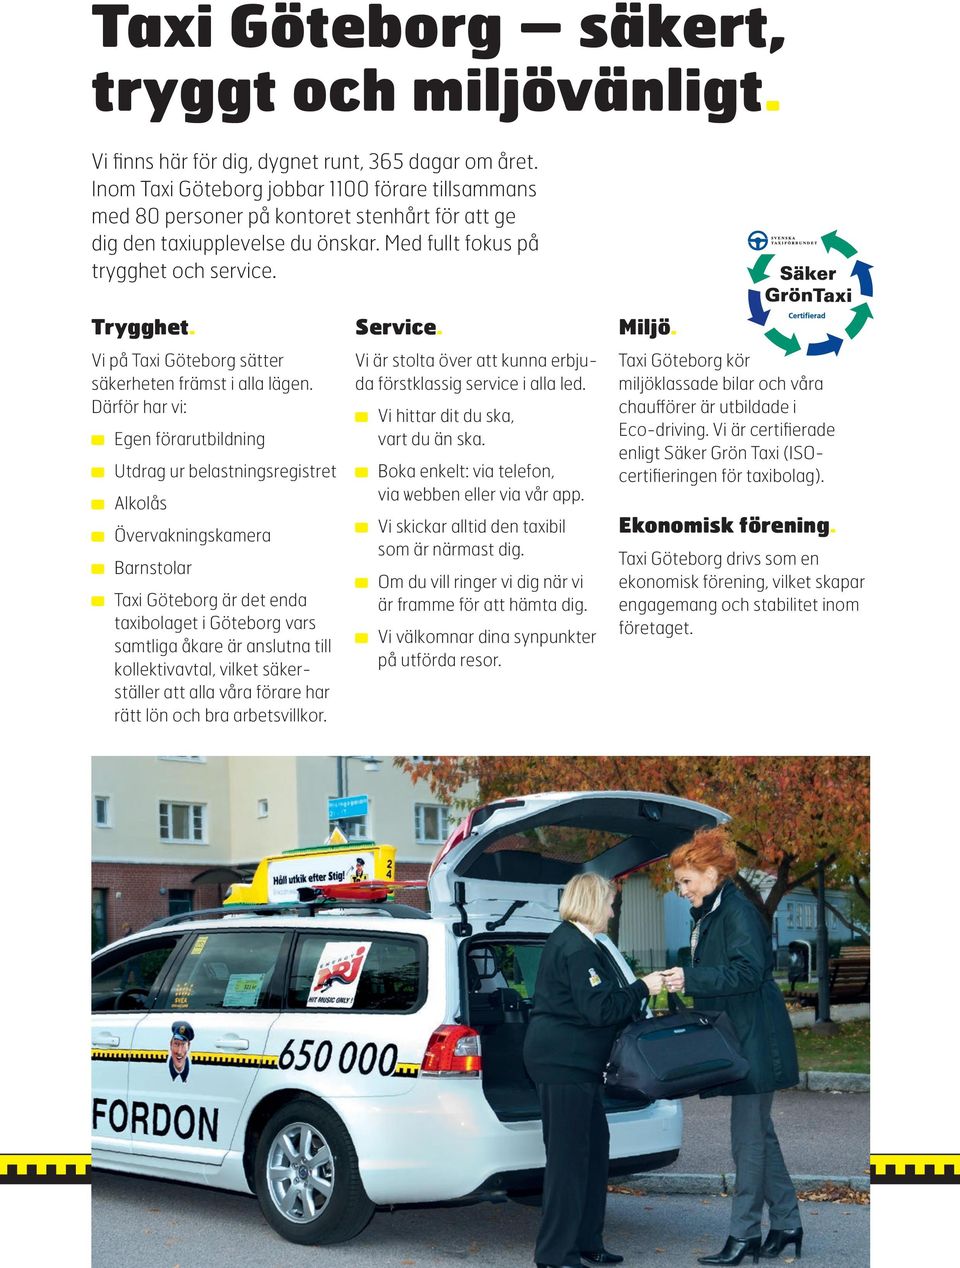 Vi på Taxi Göteborg sätter säkerheten främst i alla lägen.